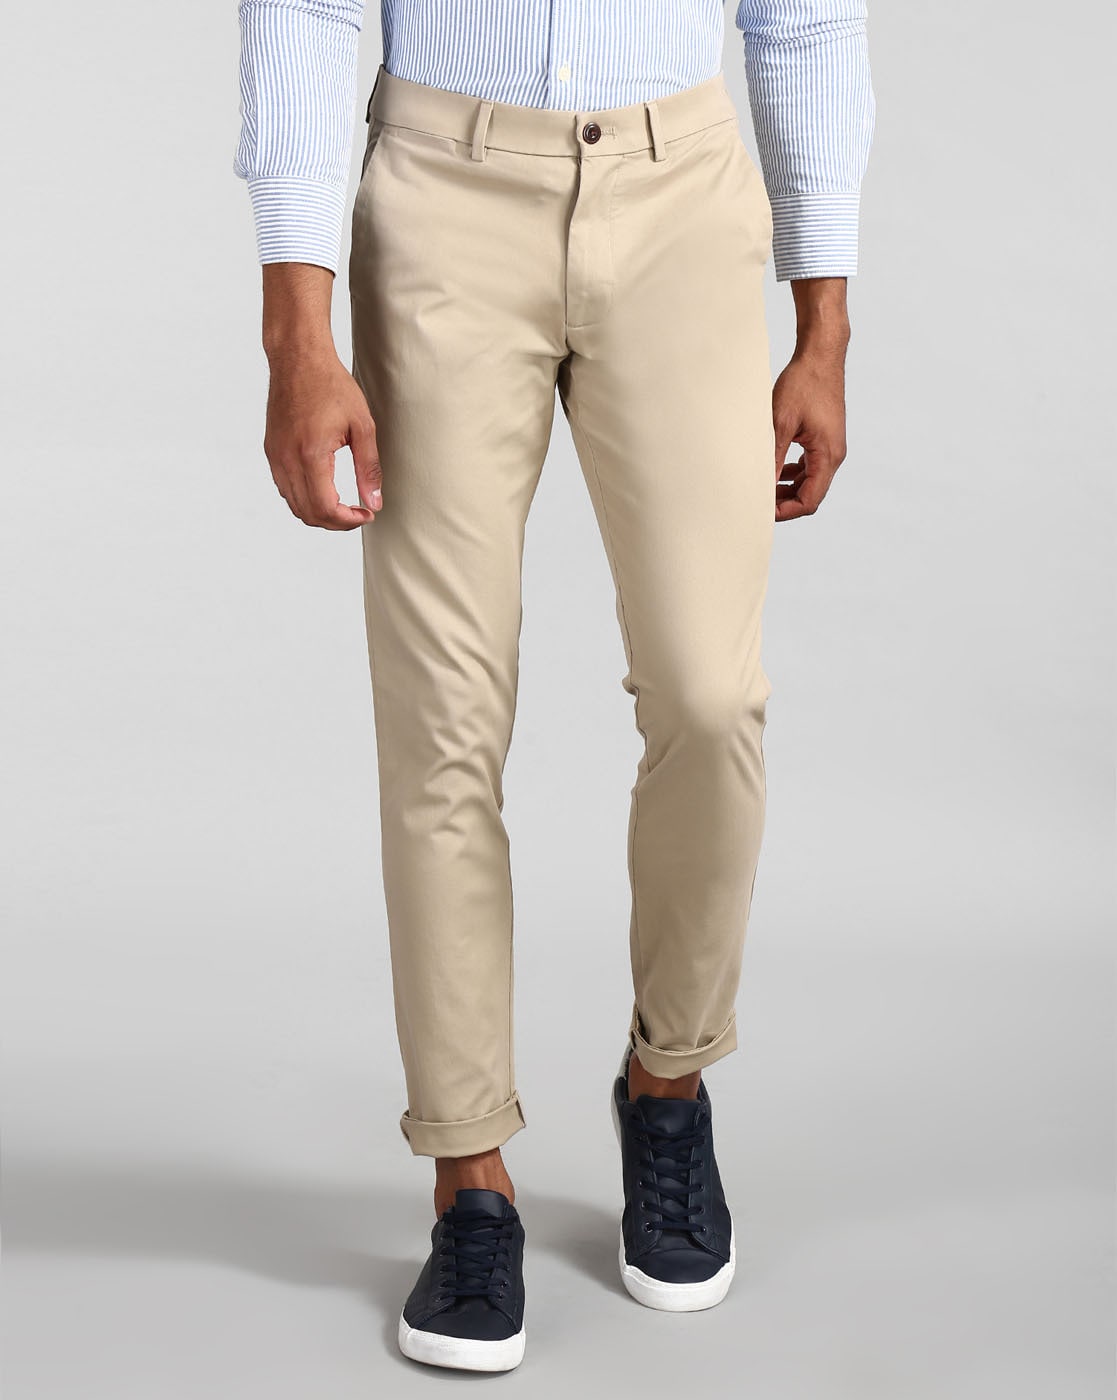 Men's Pants | Gap